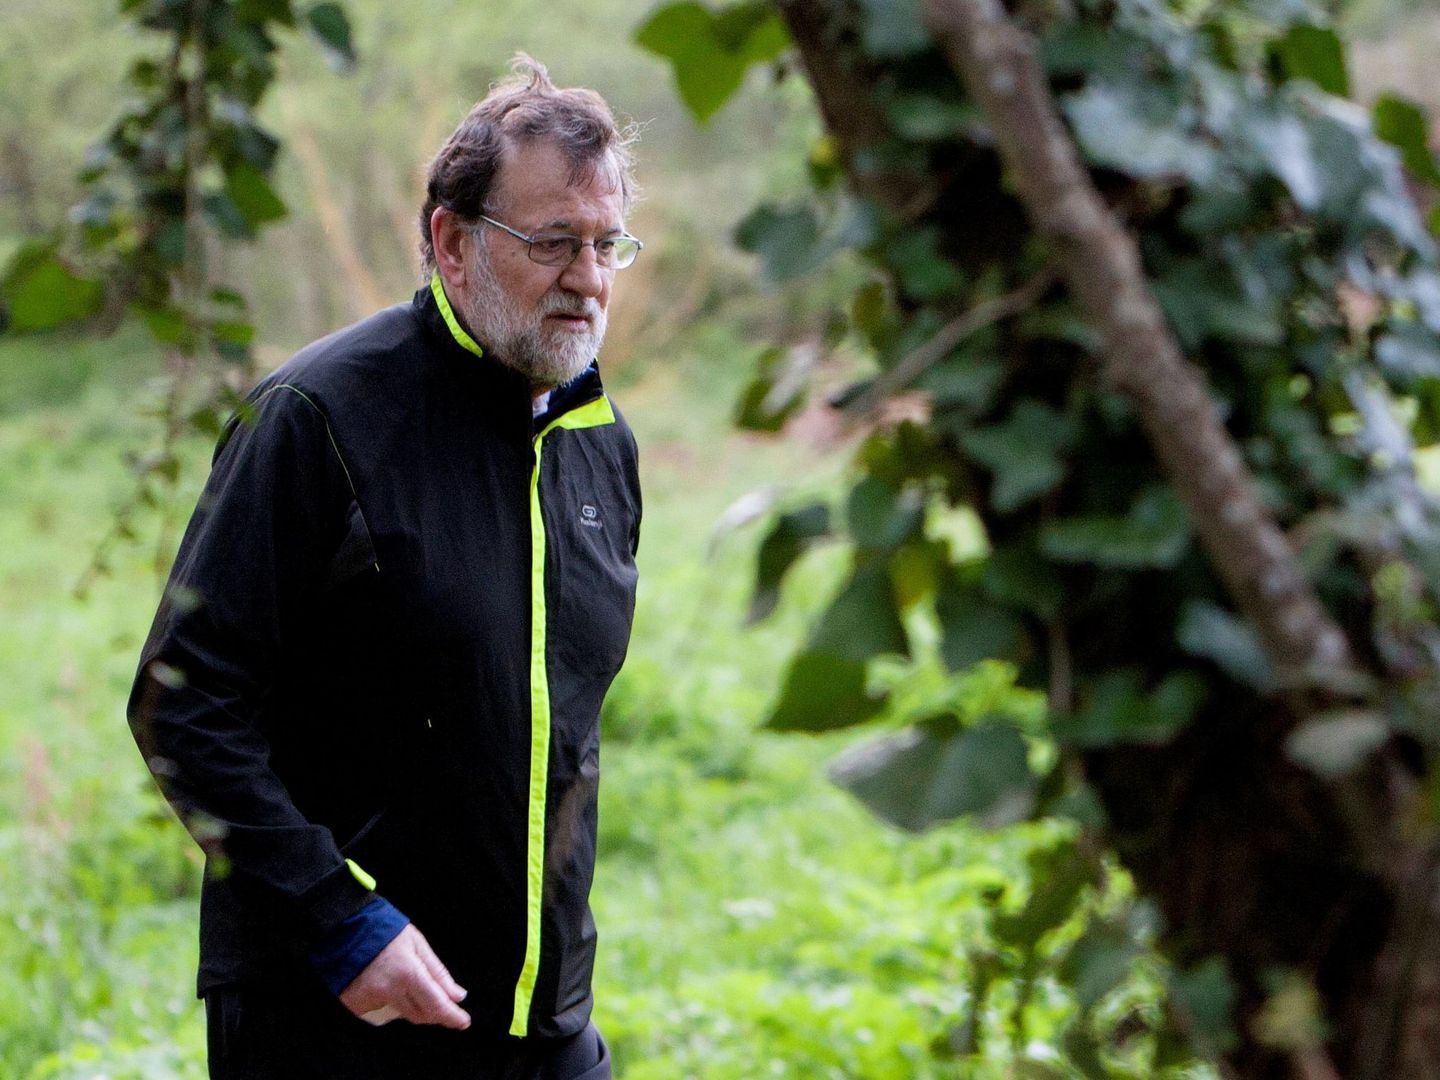 El presidente del Gobierno, Mariano Rajoy. (EFE)